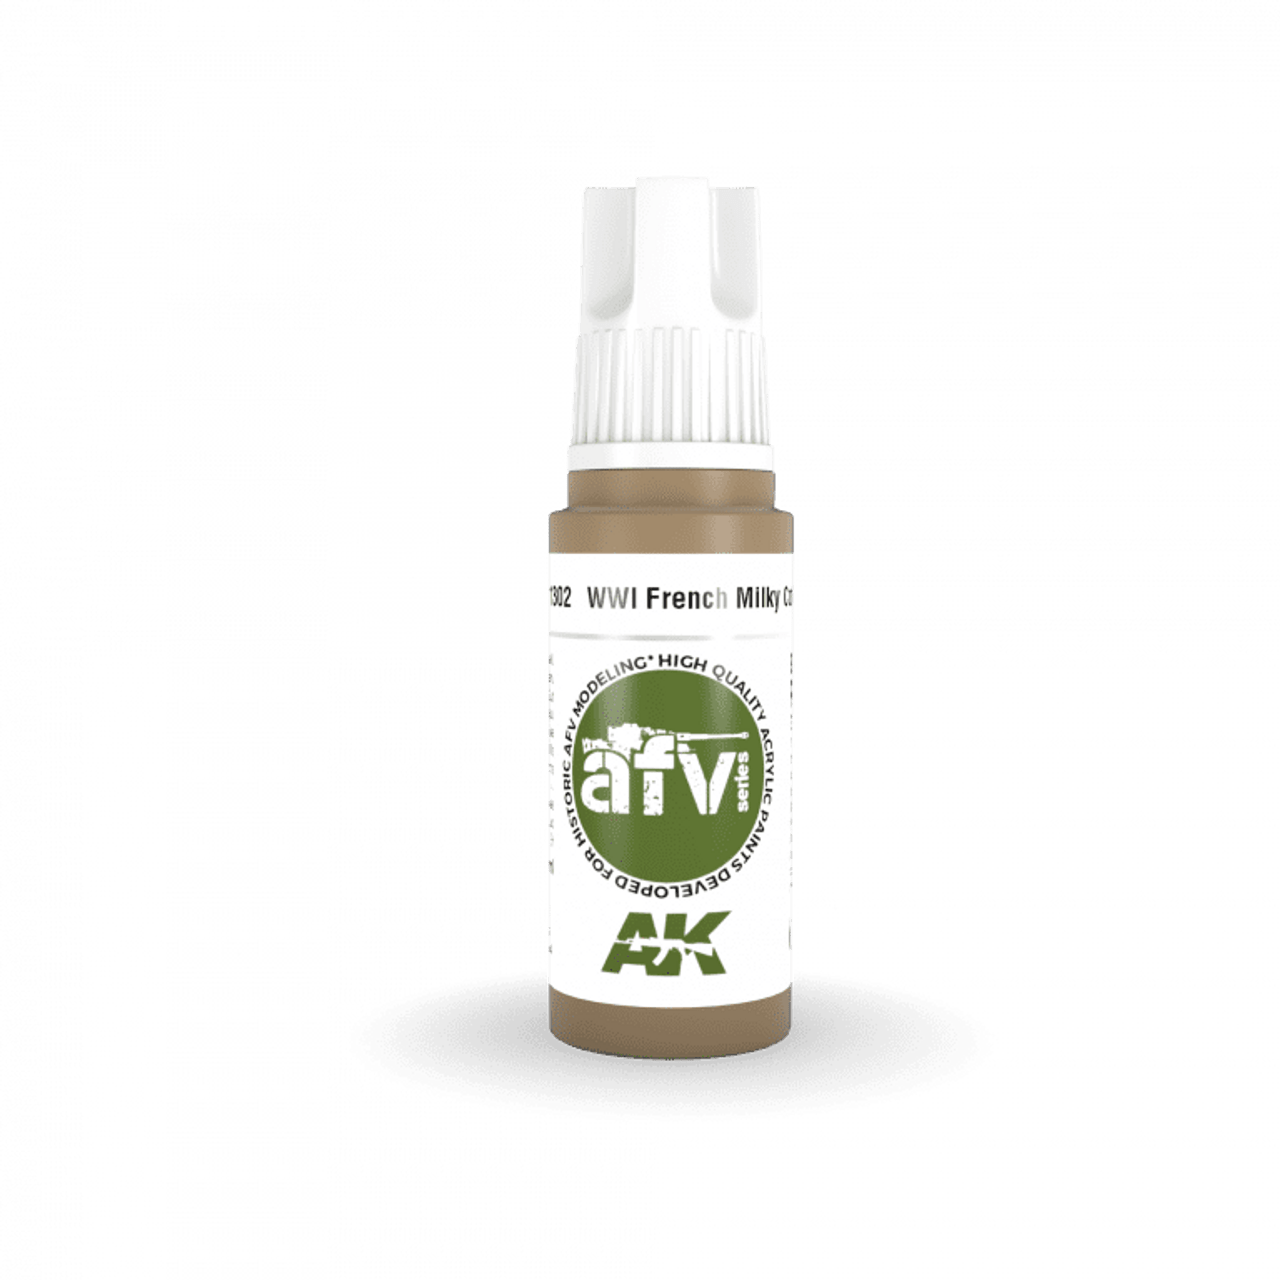 3G AFV 302 - WWI French Milky Coffee